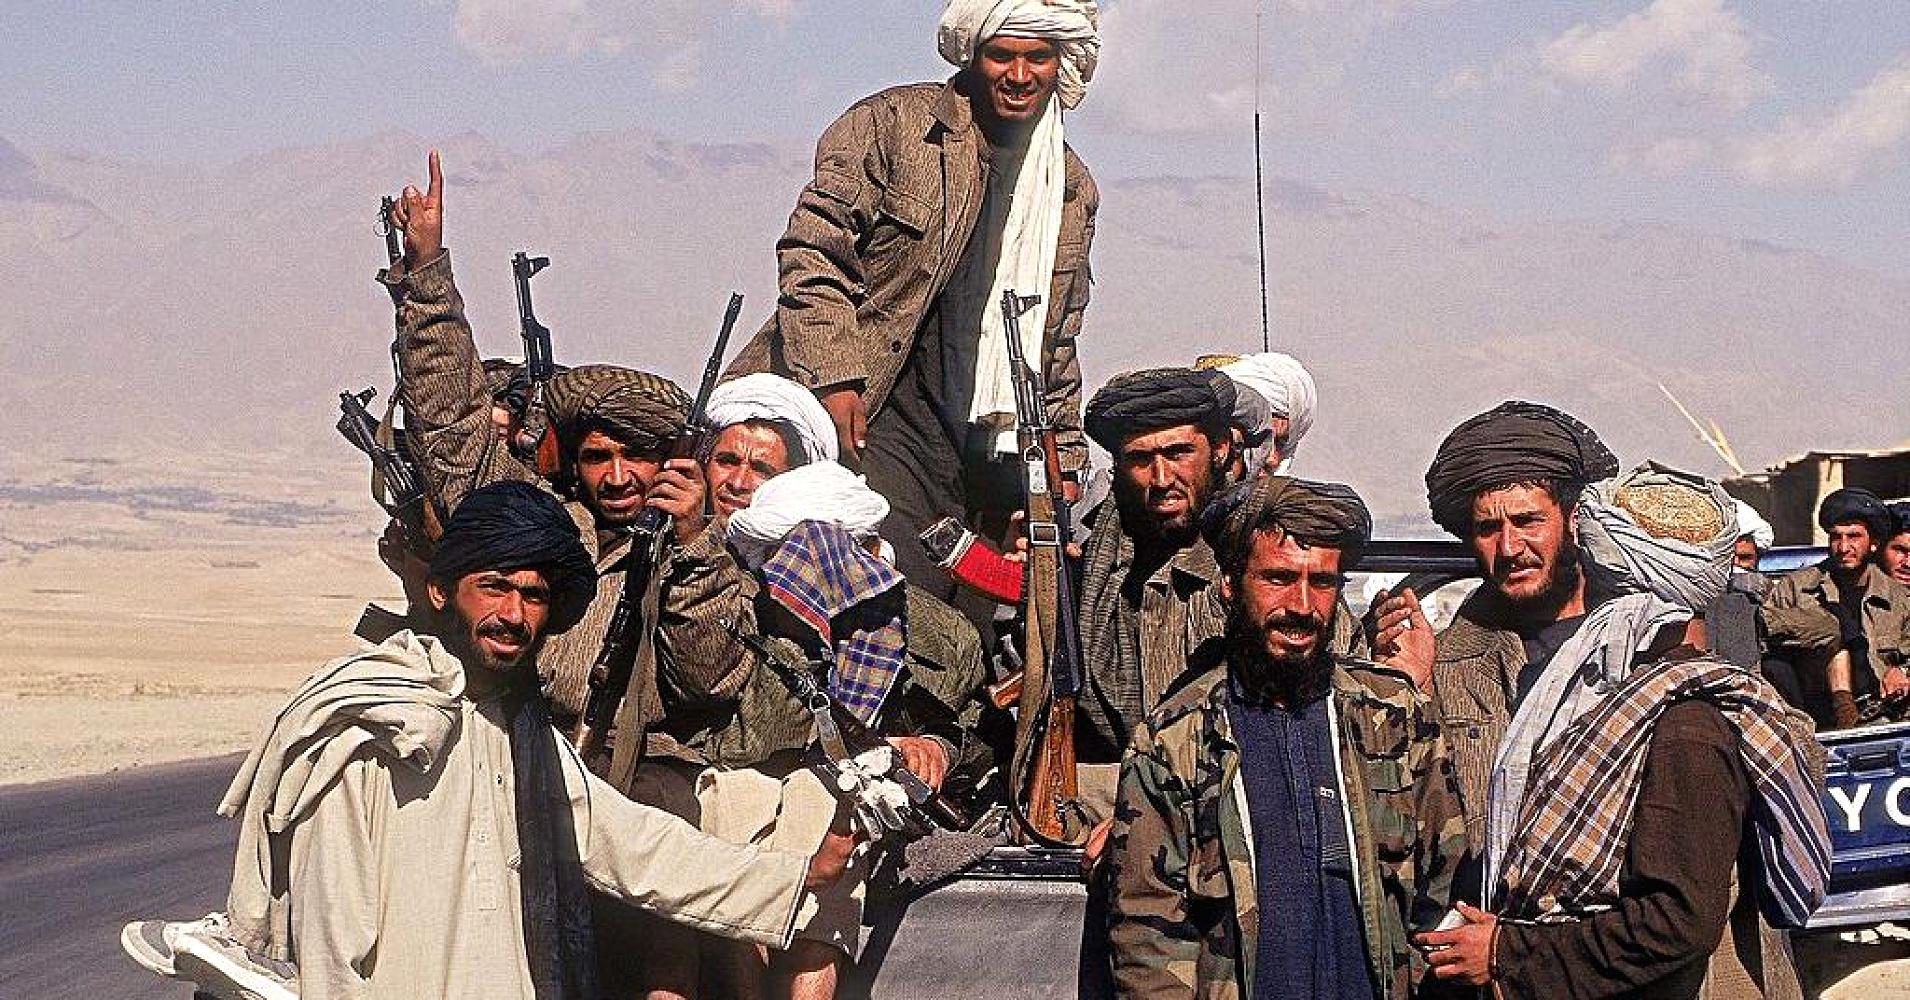 Χρόνια επικοινωνία της Μόσχας με τους Ταλιμπάν στο Αφγανιστάν για την ασφάλεια των Ρώσων πολιτών